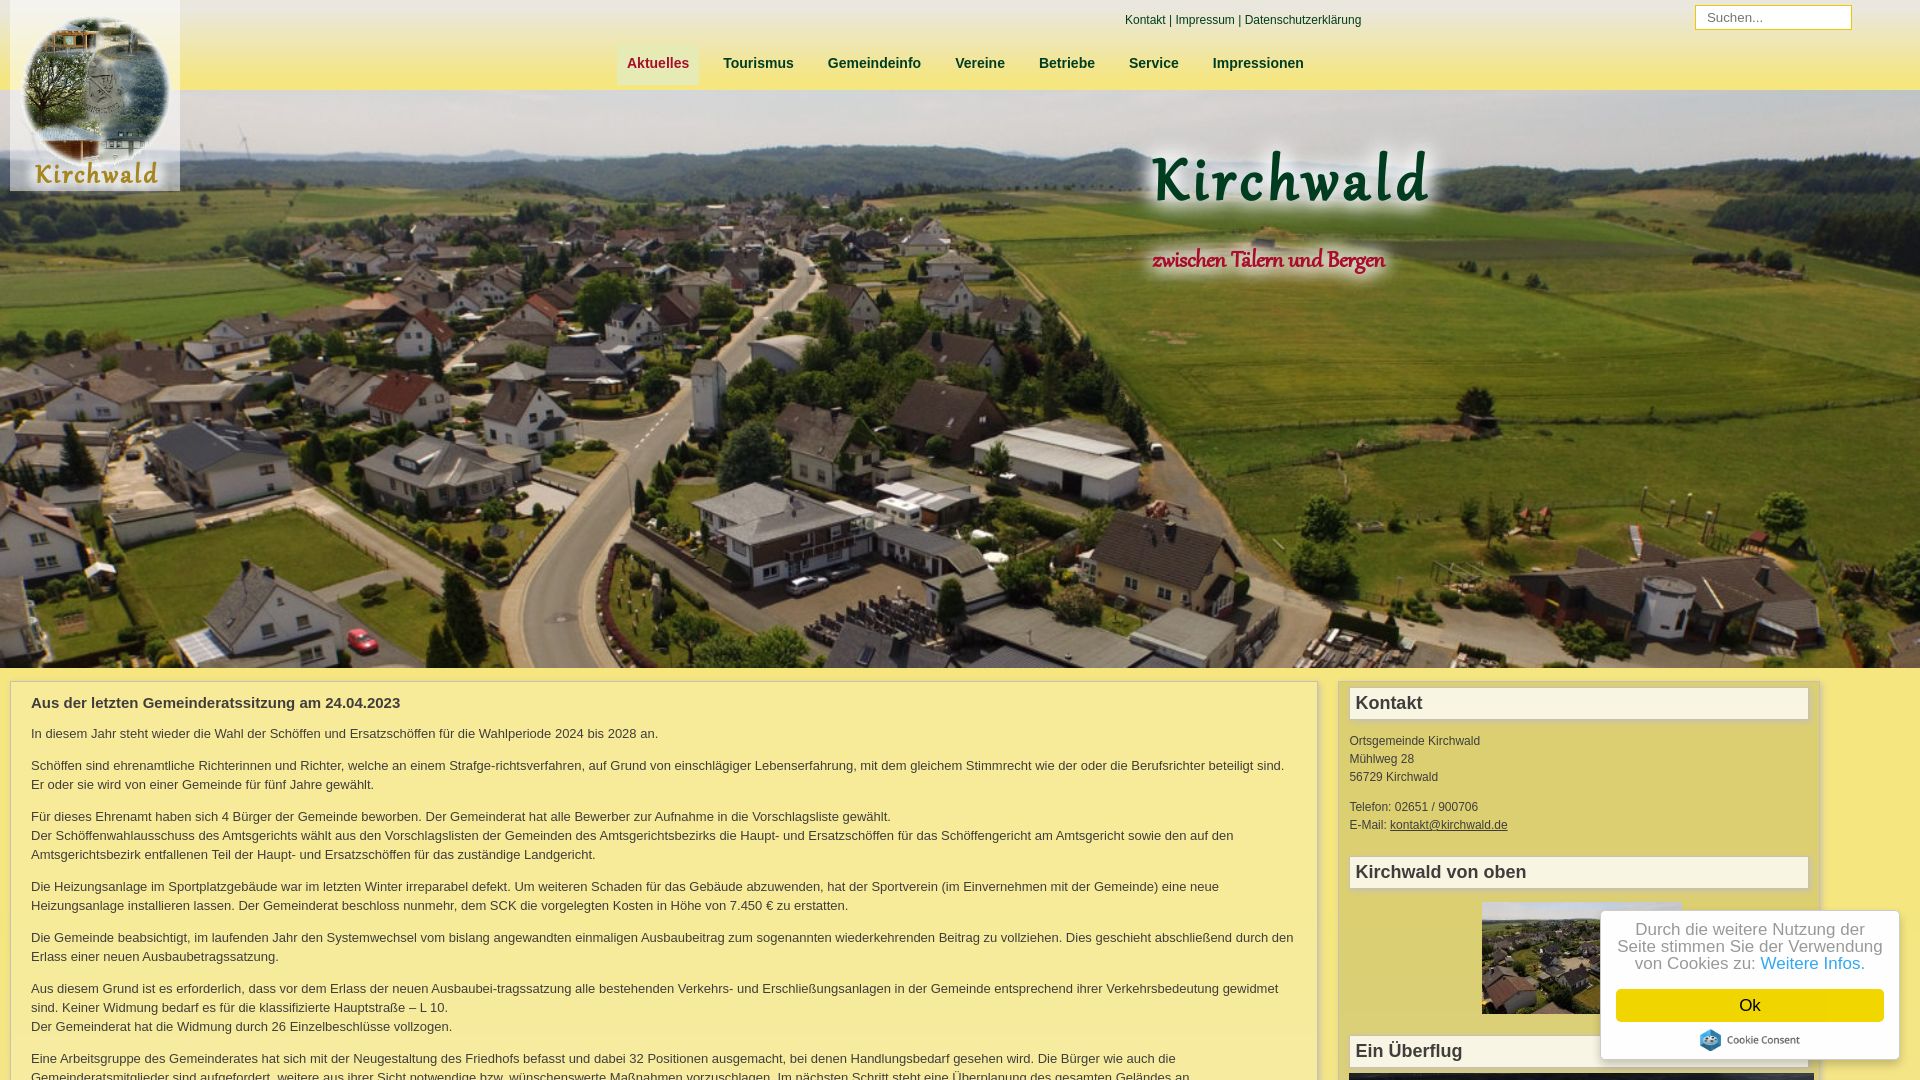 Stato del sito web kirchwald.de è   ONLINE